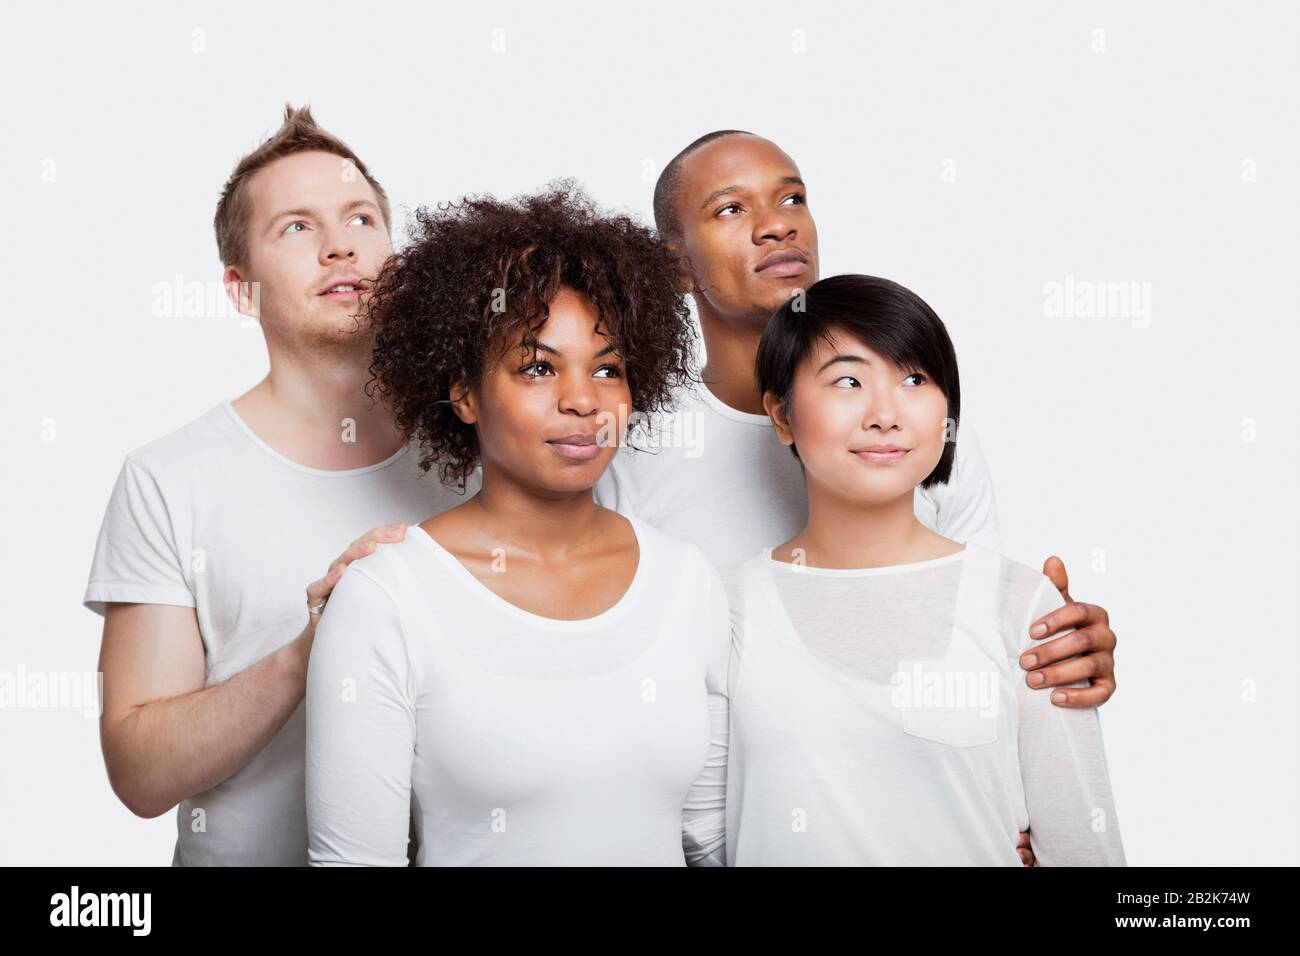 Jeunes amis multiethniques dans des t-shirts blancs regardant loin sur fond blanc Banque D'Images